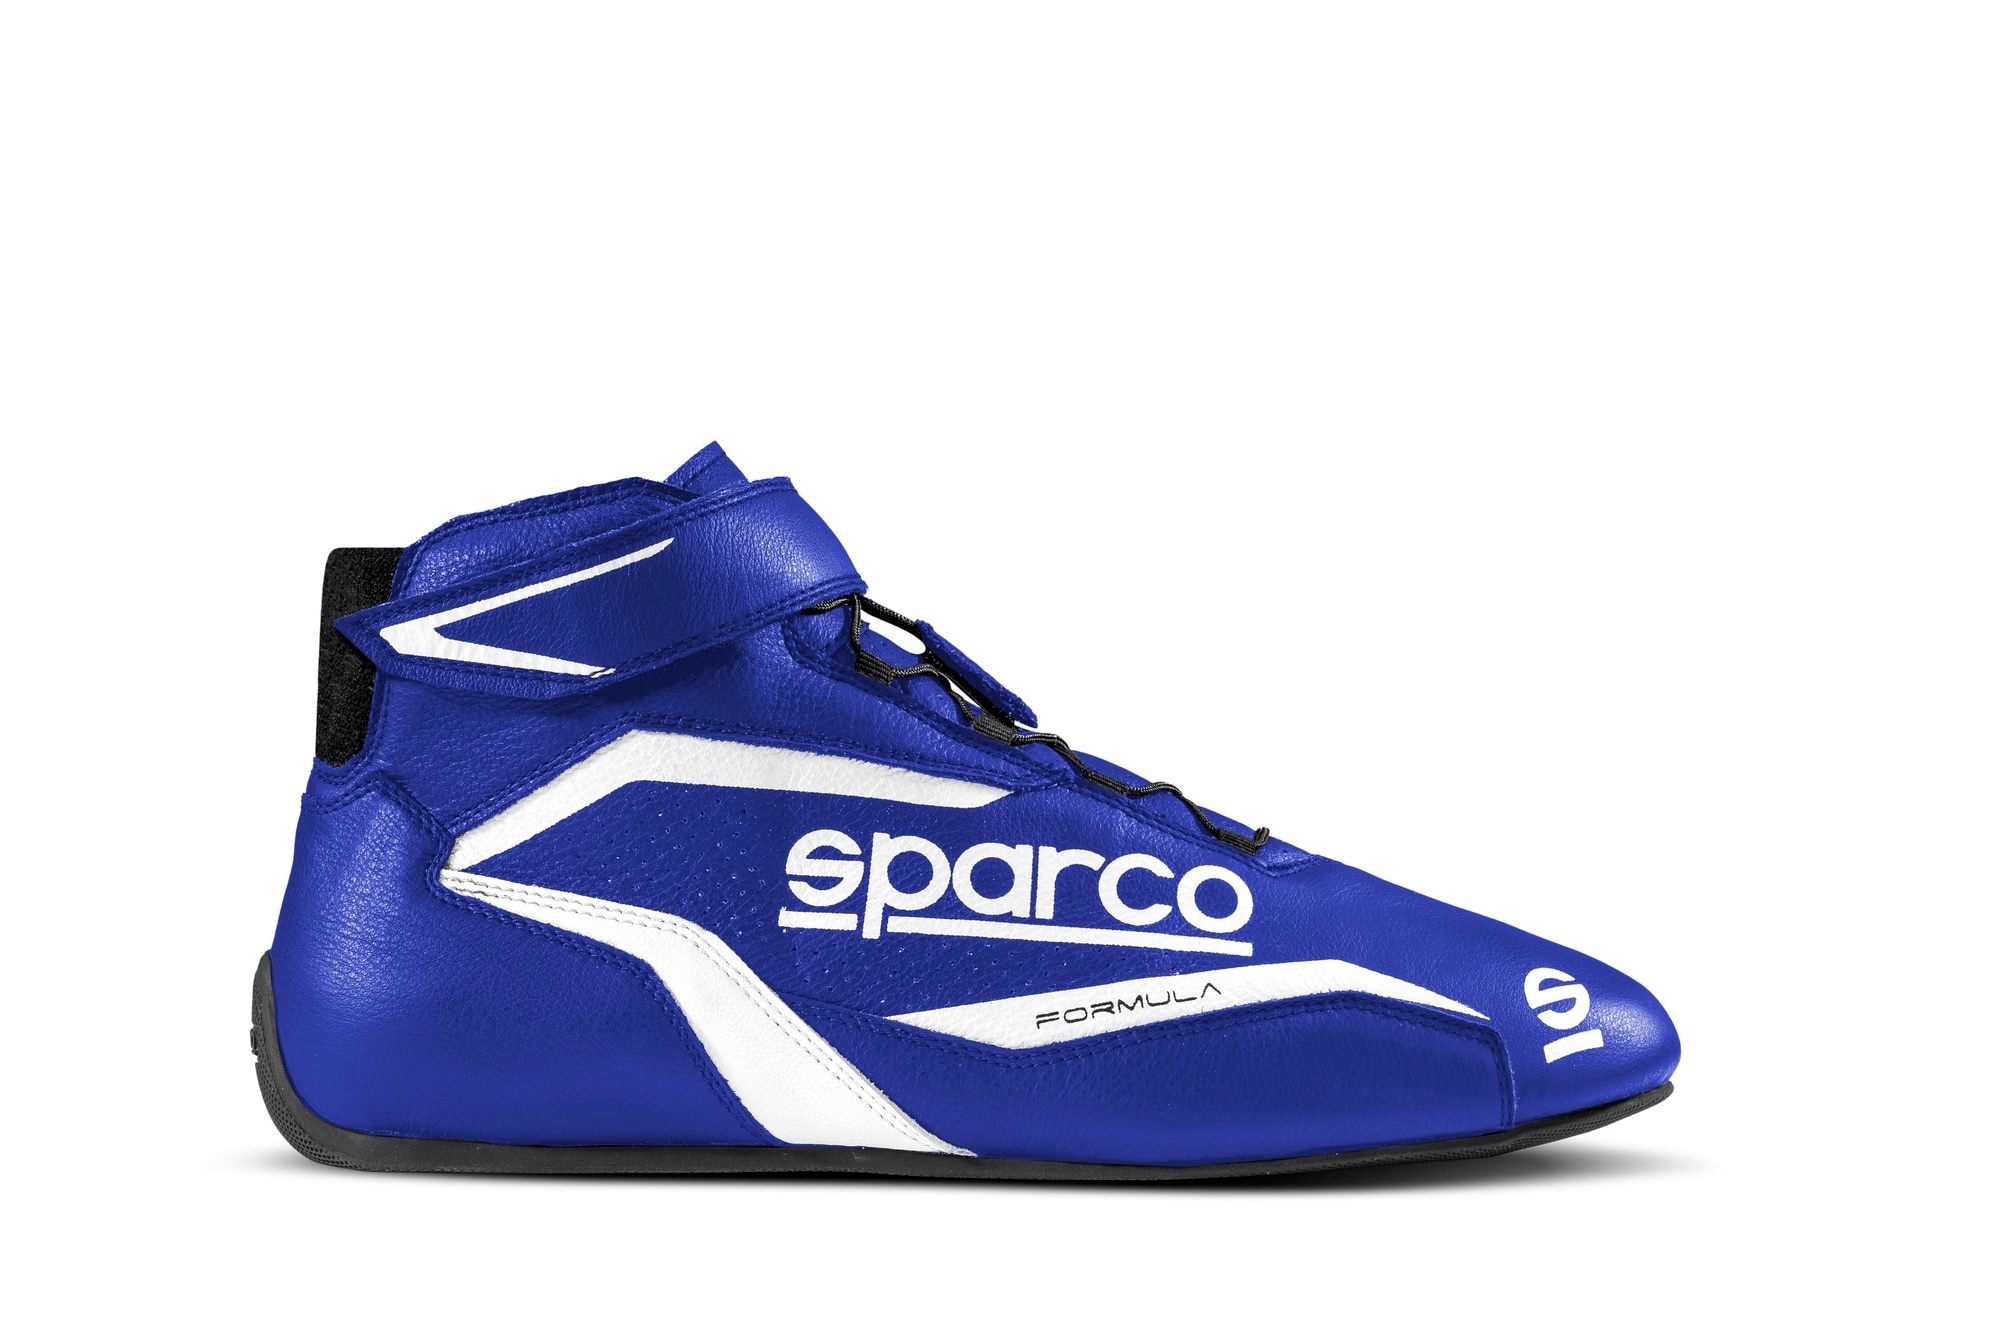 Sko Sparco Formula Blå